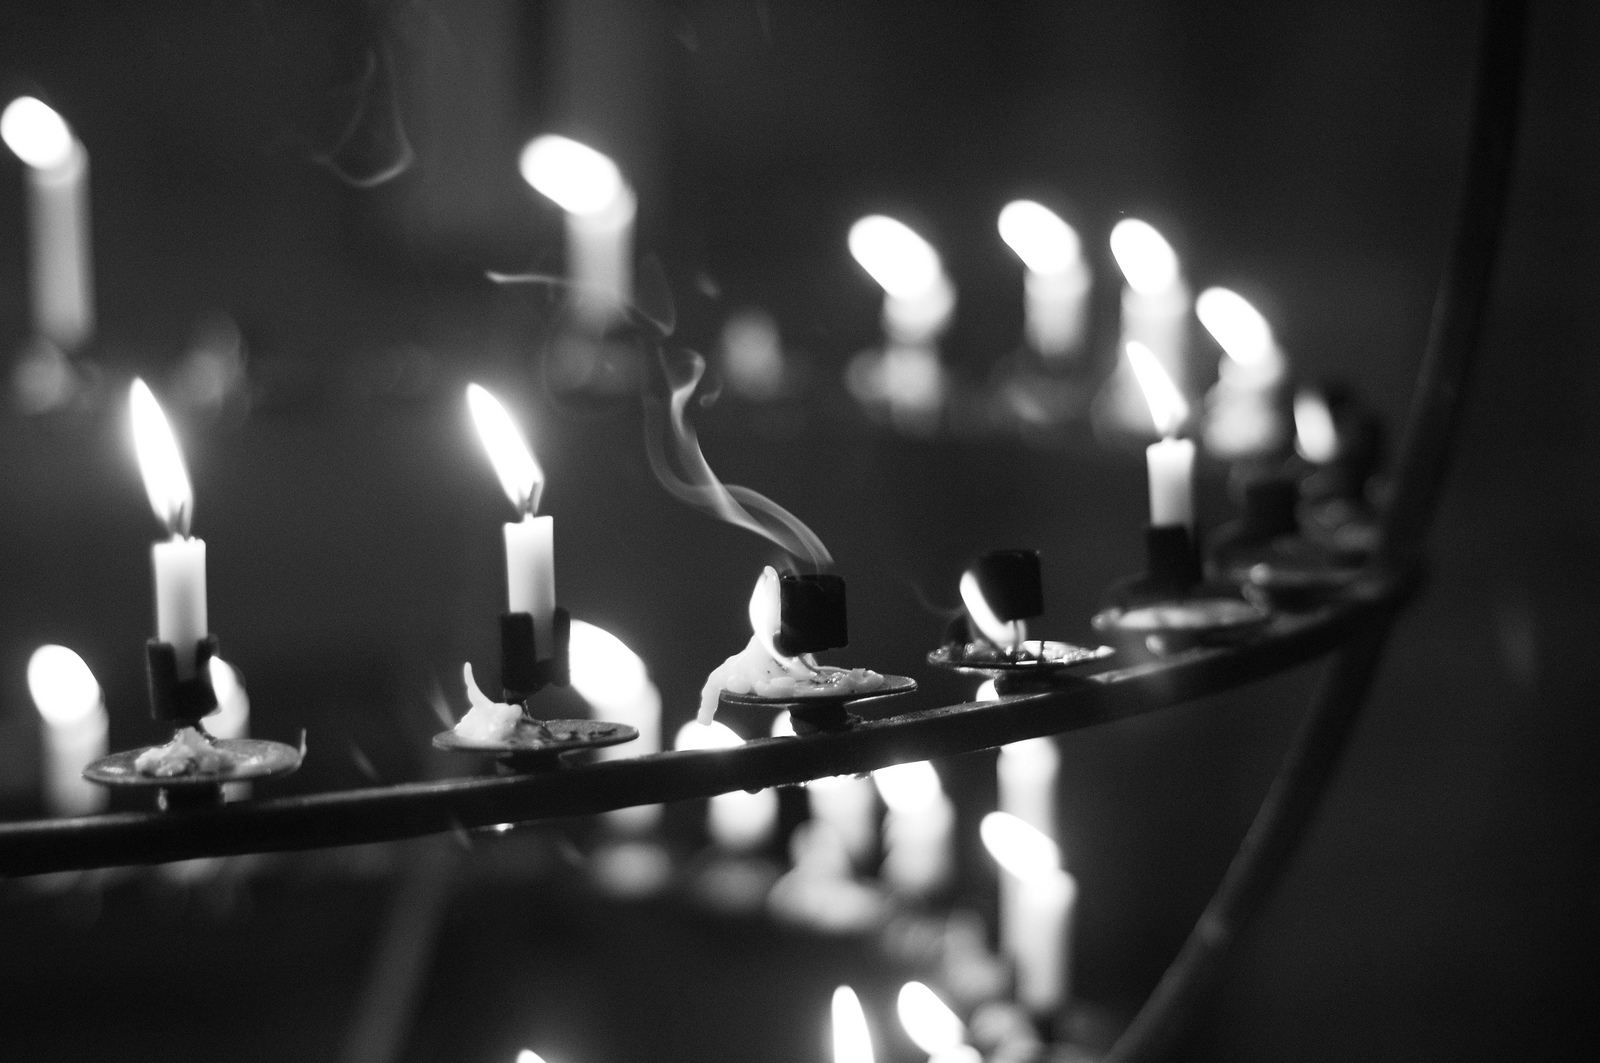 Свеча на черном фоне фото